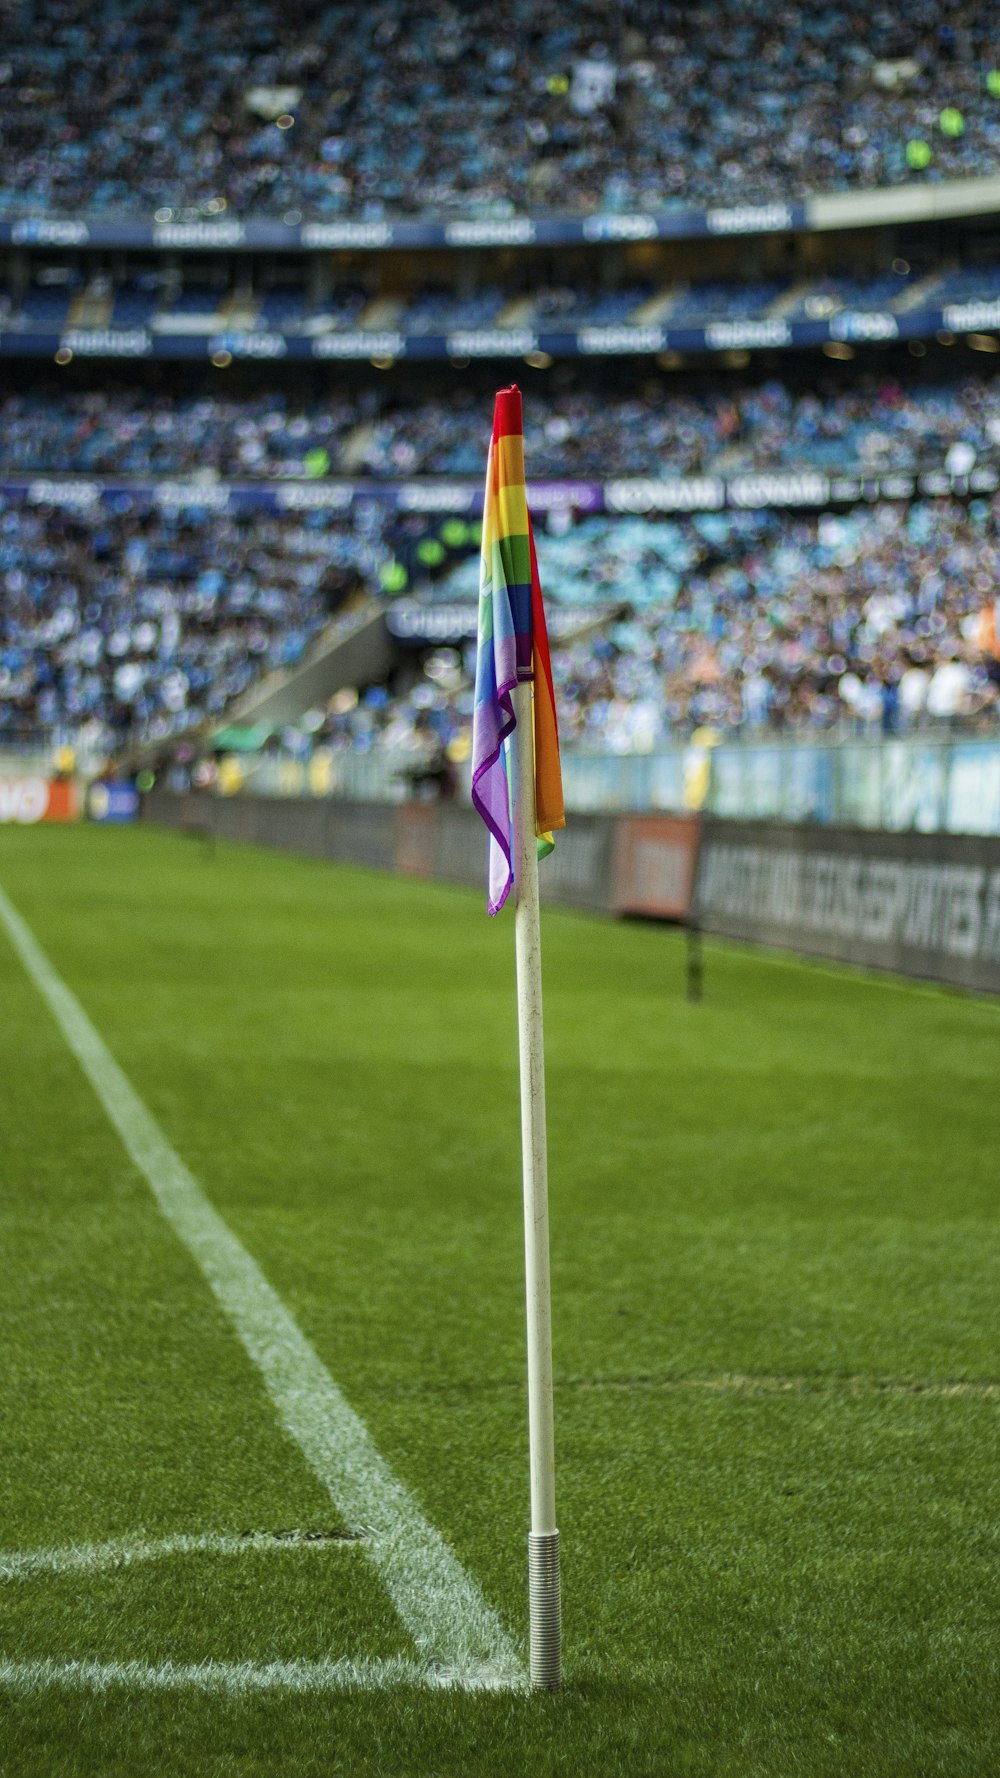 a flag on a pole in a stadium